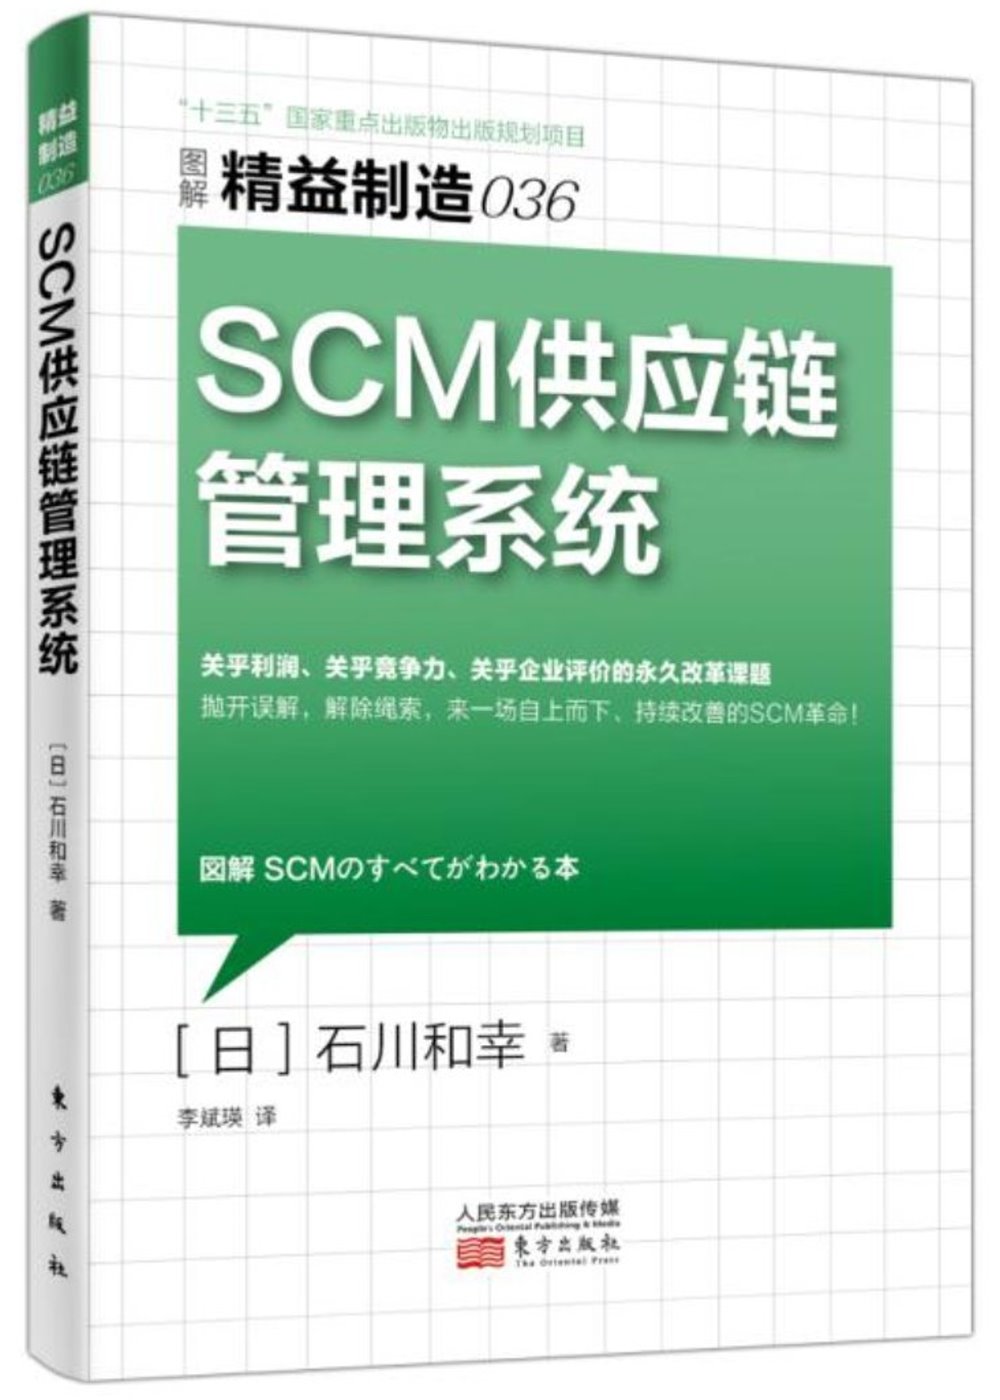 SCM供應鏈管理系統